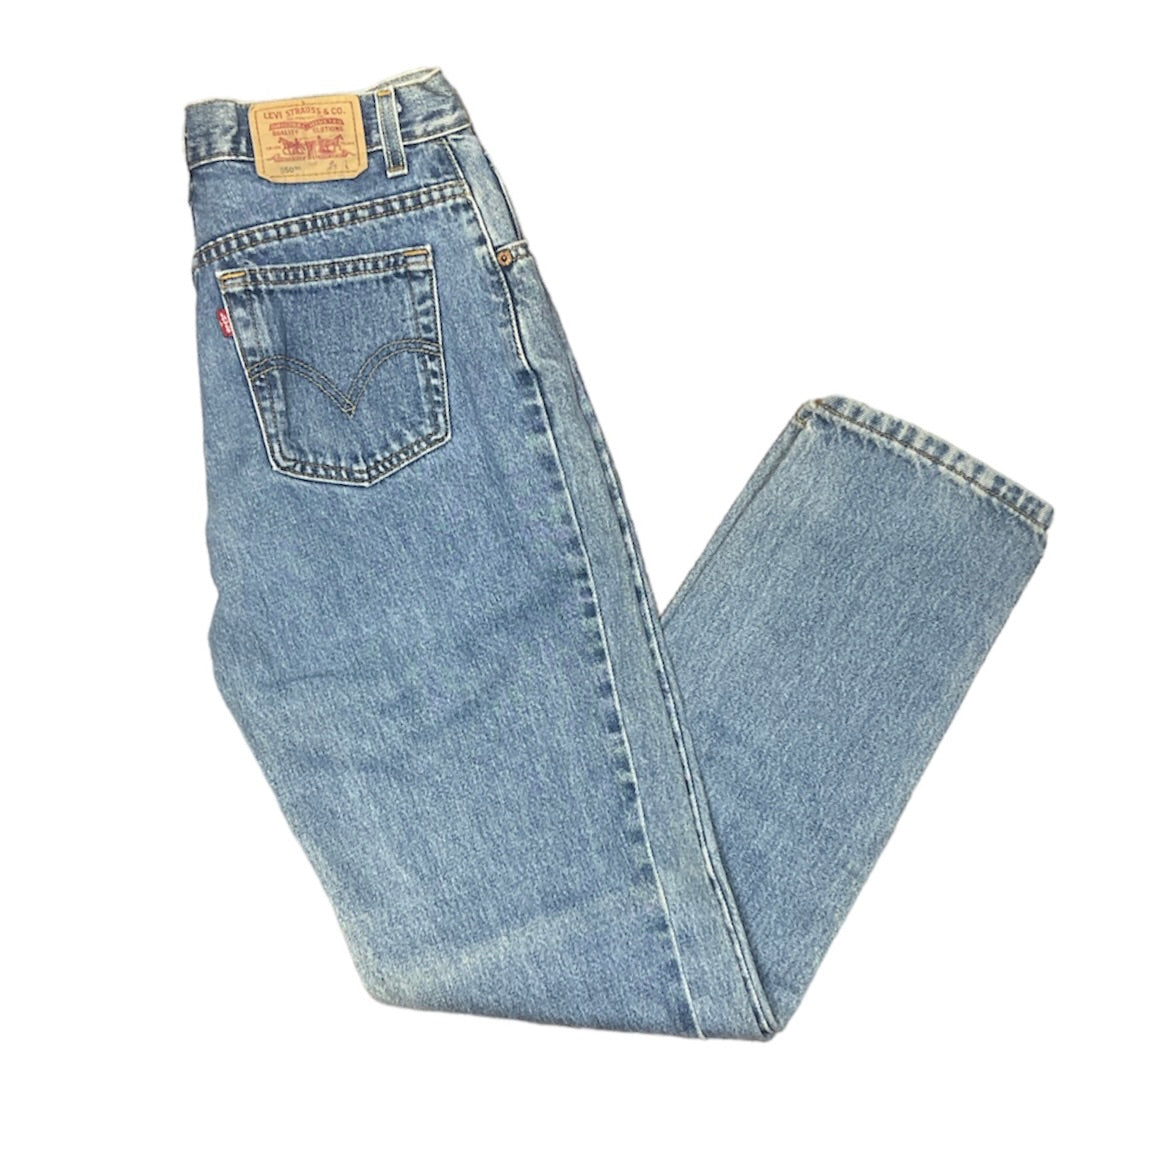 Vintage Levis 550 Blue Jeans (W29)